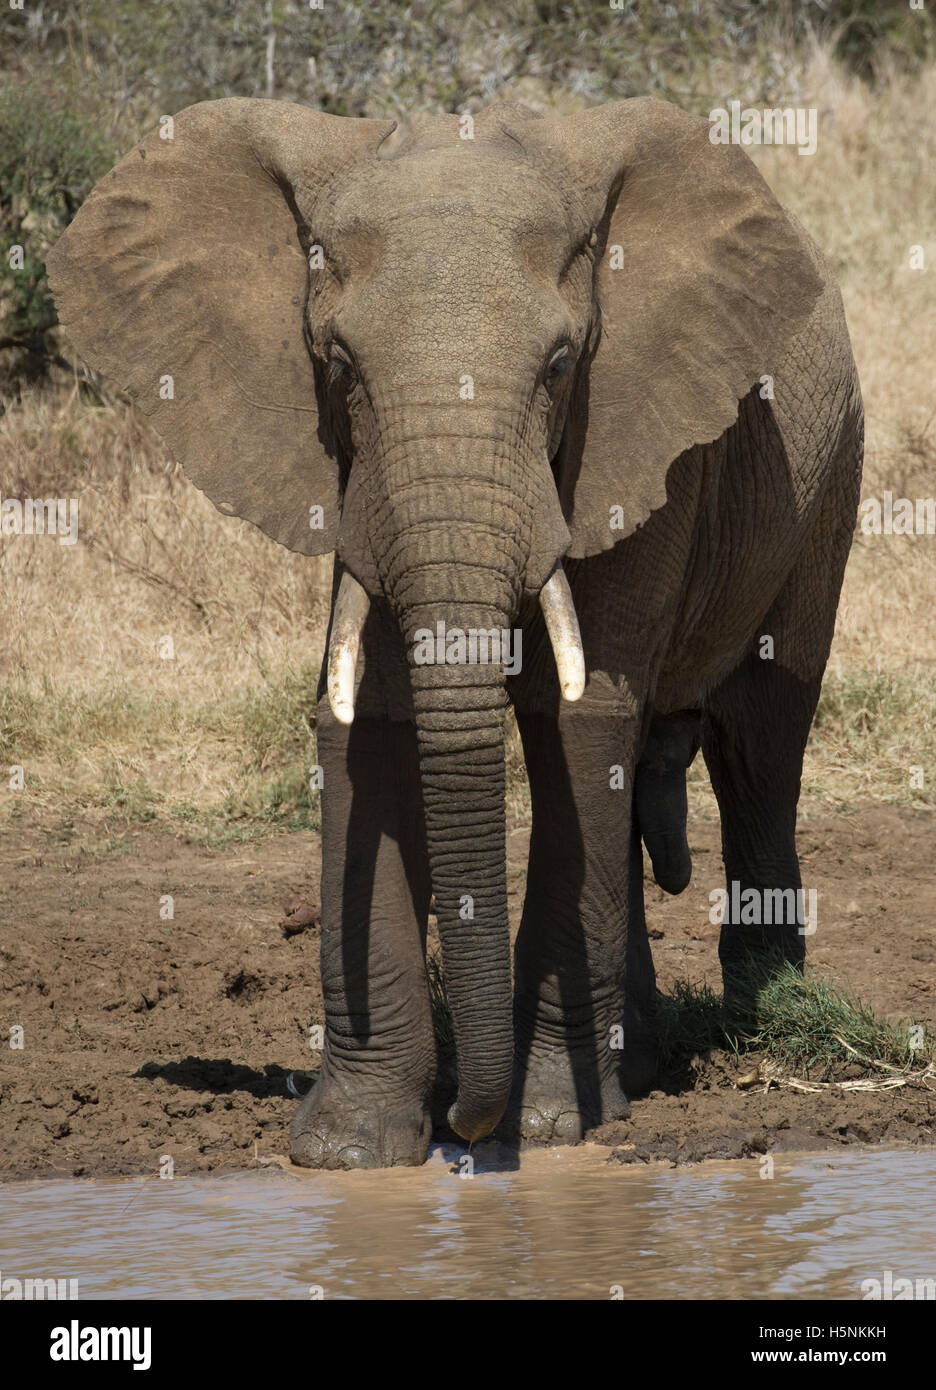 Un elefante frente a cámara Loxodanta africana praderas meseta Laikipia, Kenya Foto de stock